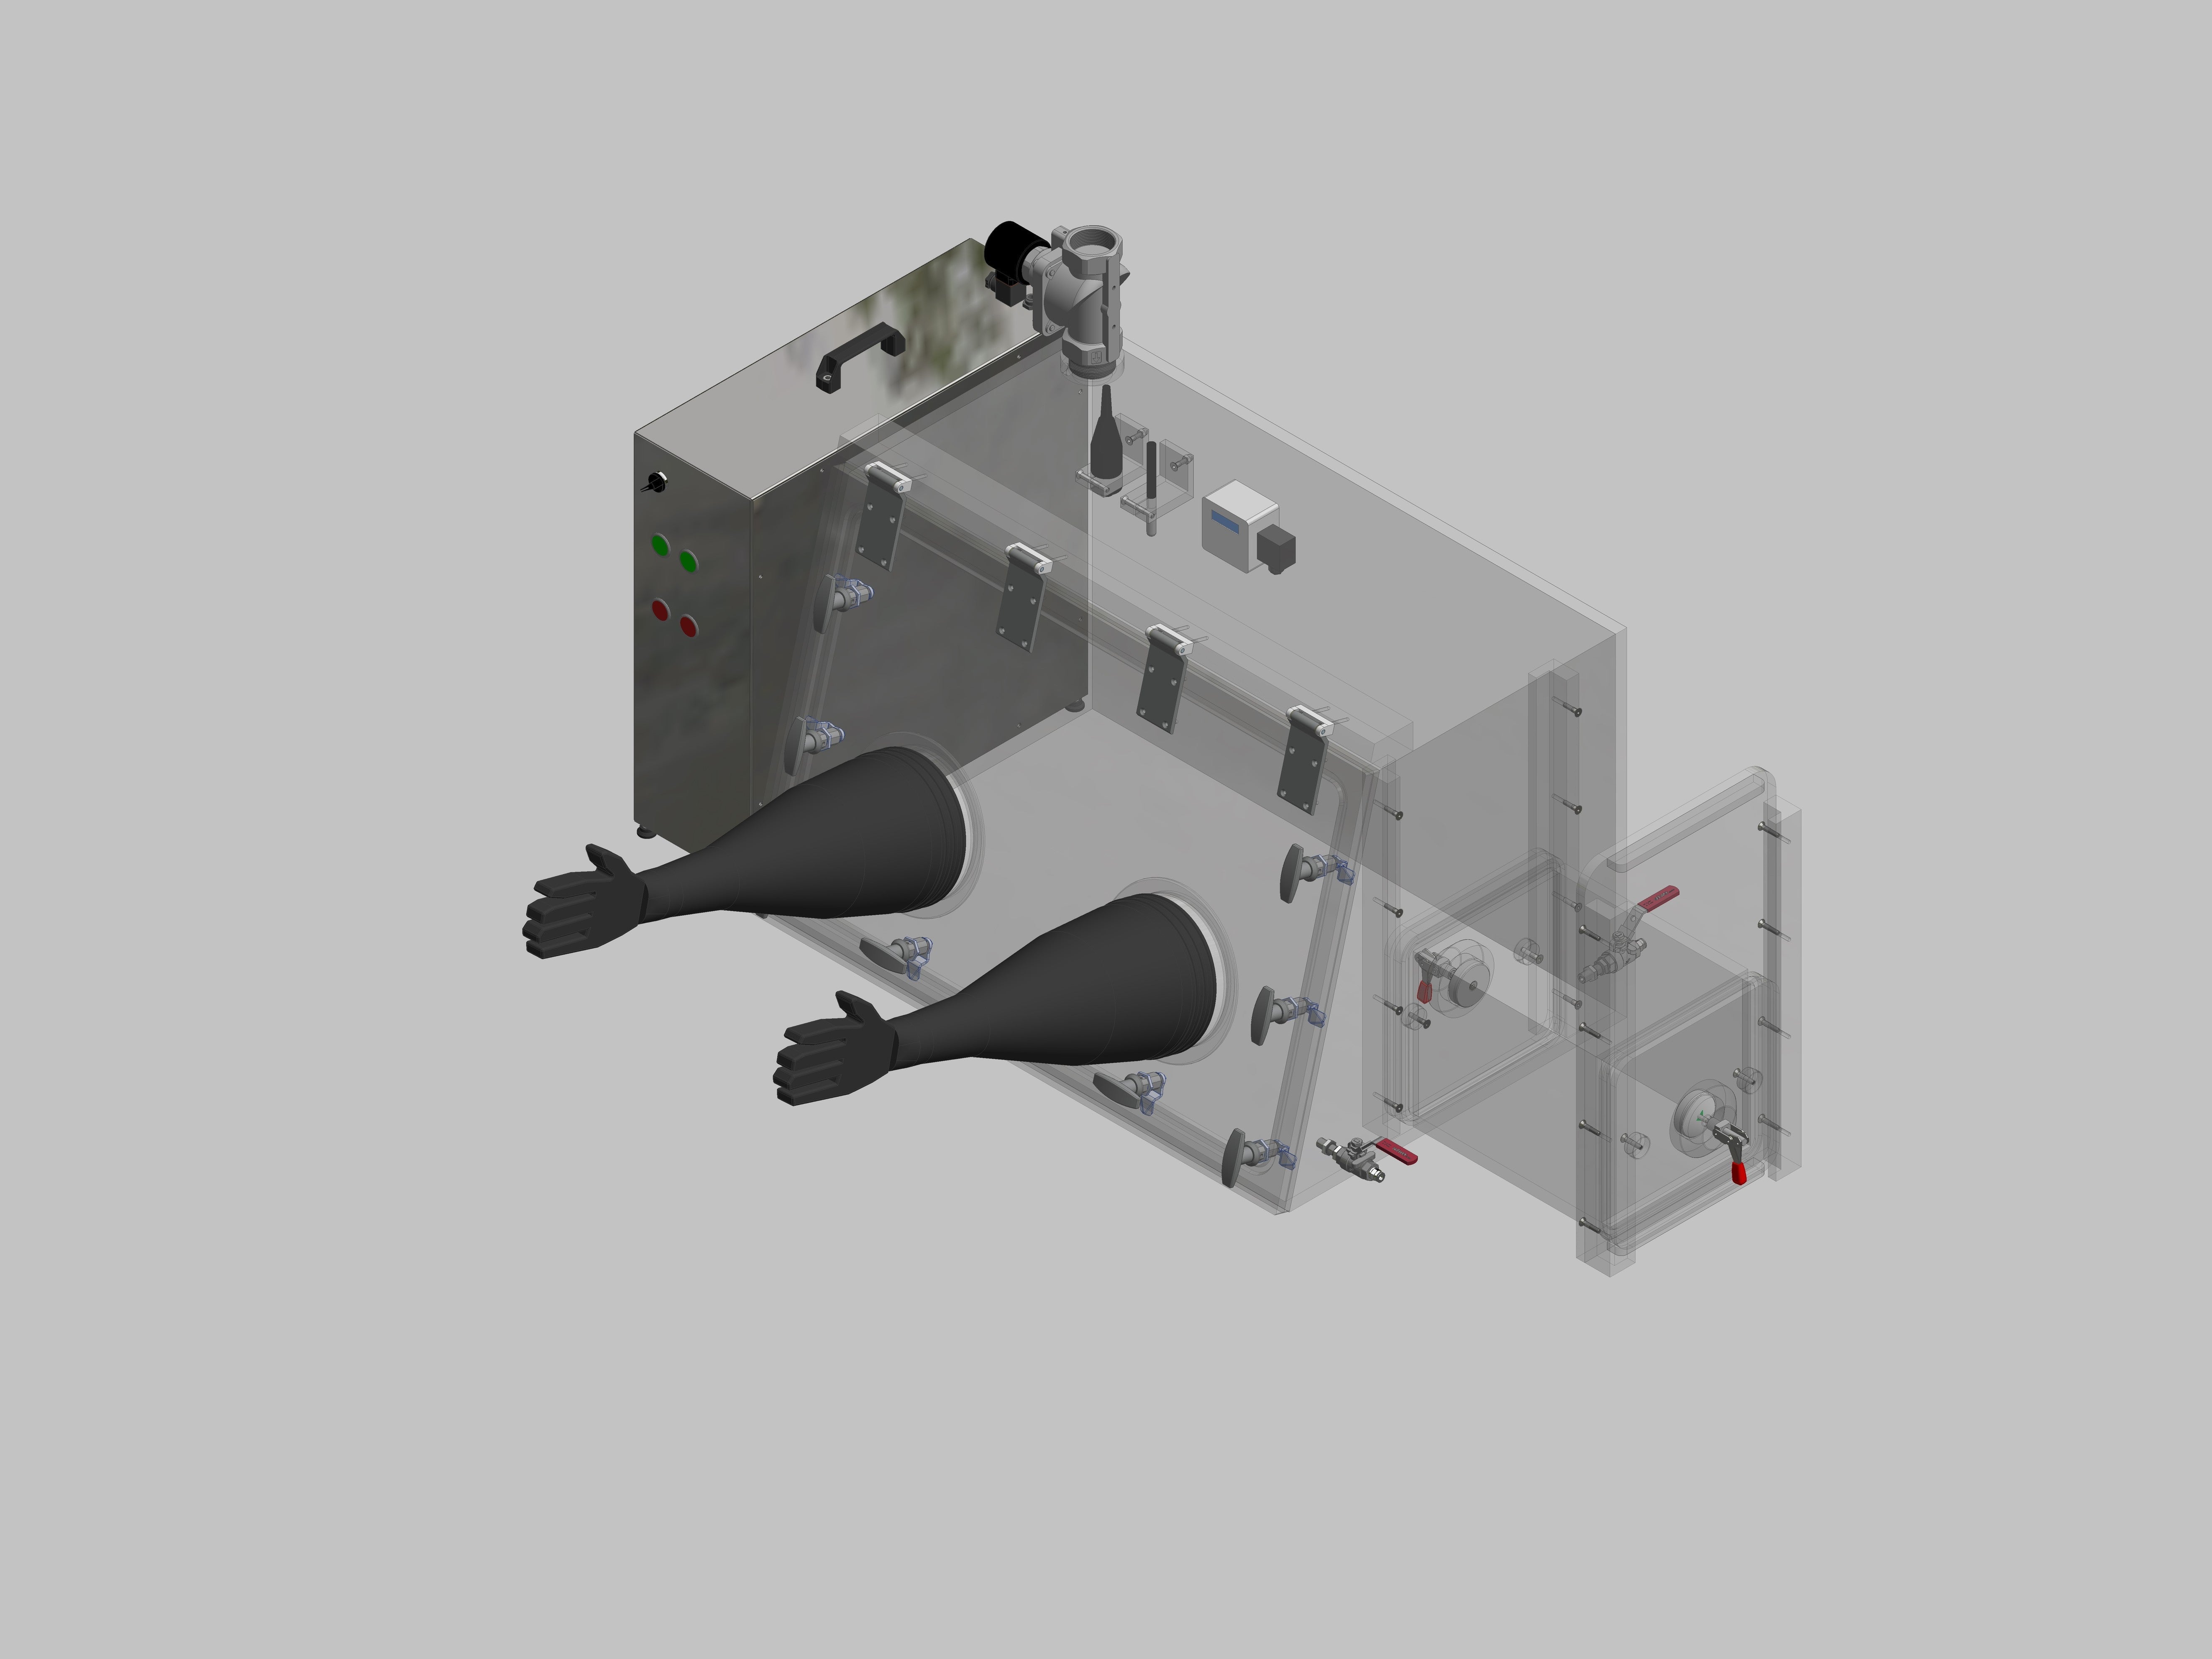 Glovebox aus Acryl> Gasbefüllung: Spülautomatik mit Druckregelung, Frontausführung: Schwenkbar nach oben, Seitenausführung: Rechteckschleuse Steuerung: Sauerstoffregler mit Feuchteanzeige